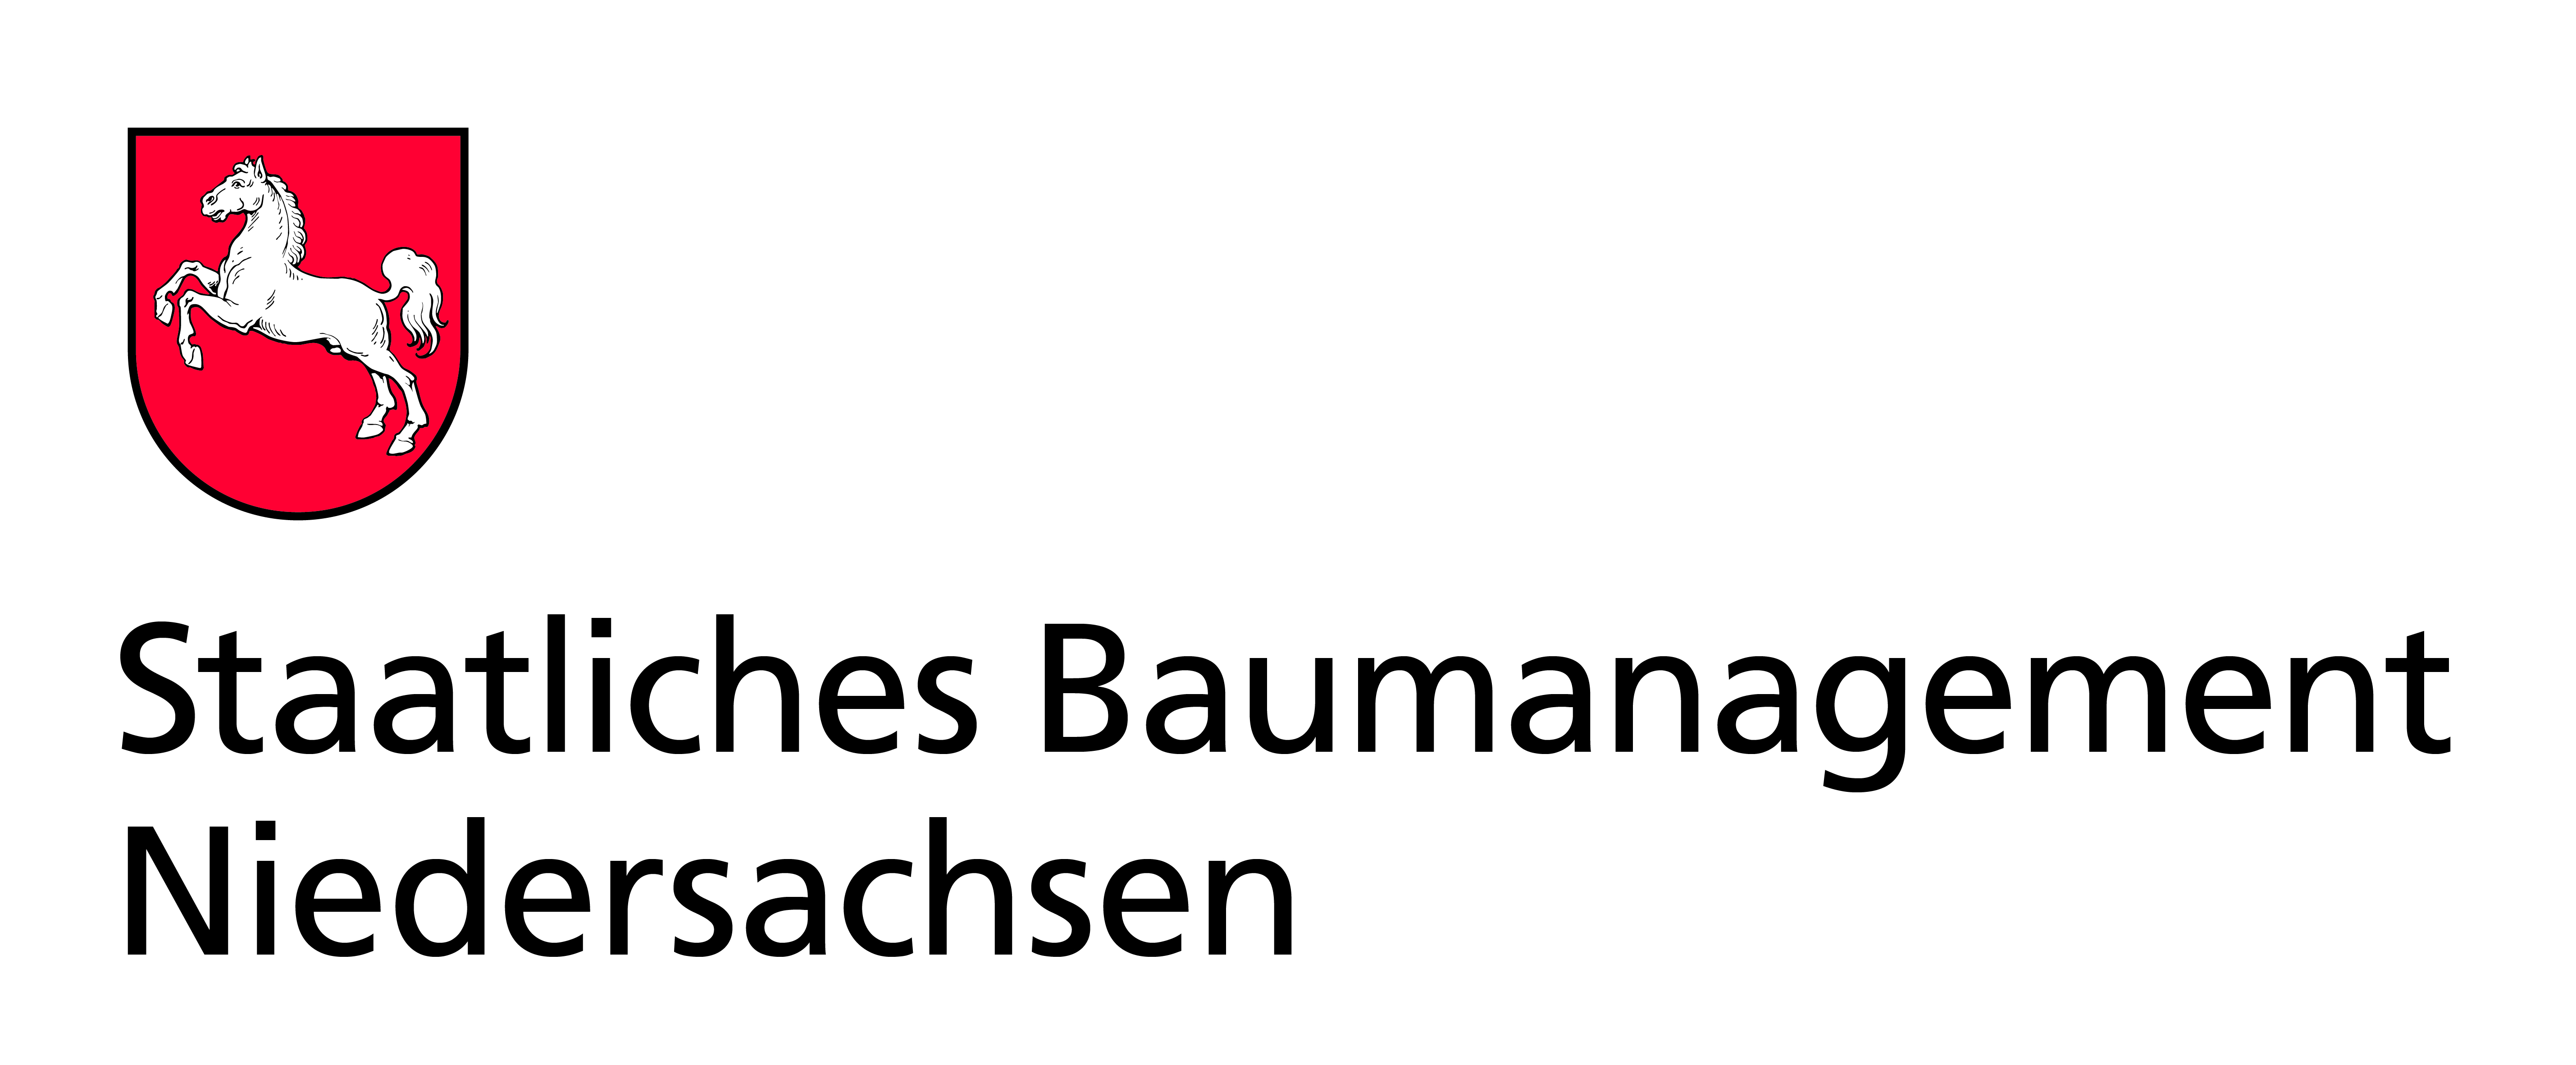 Staatliches Baumanagement Niedersachsen Logo